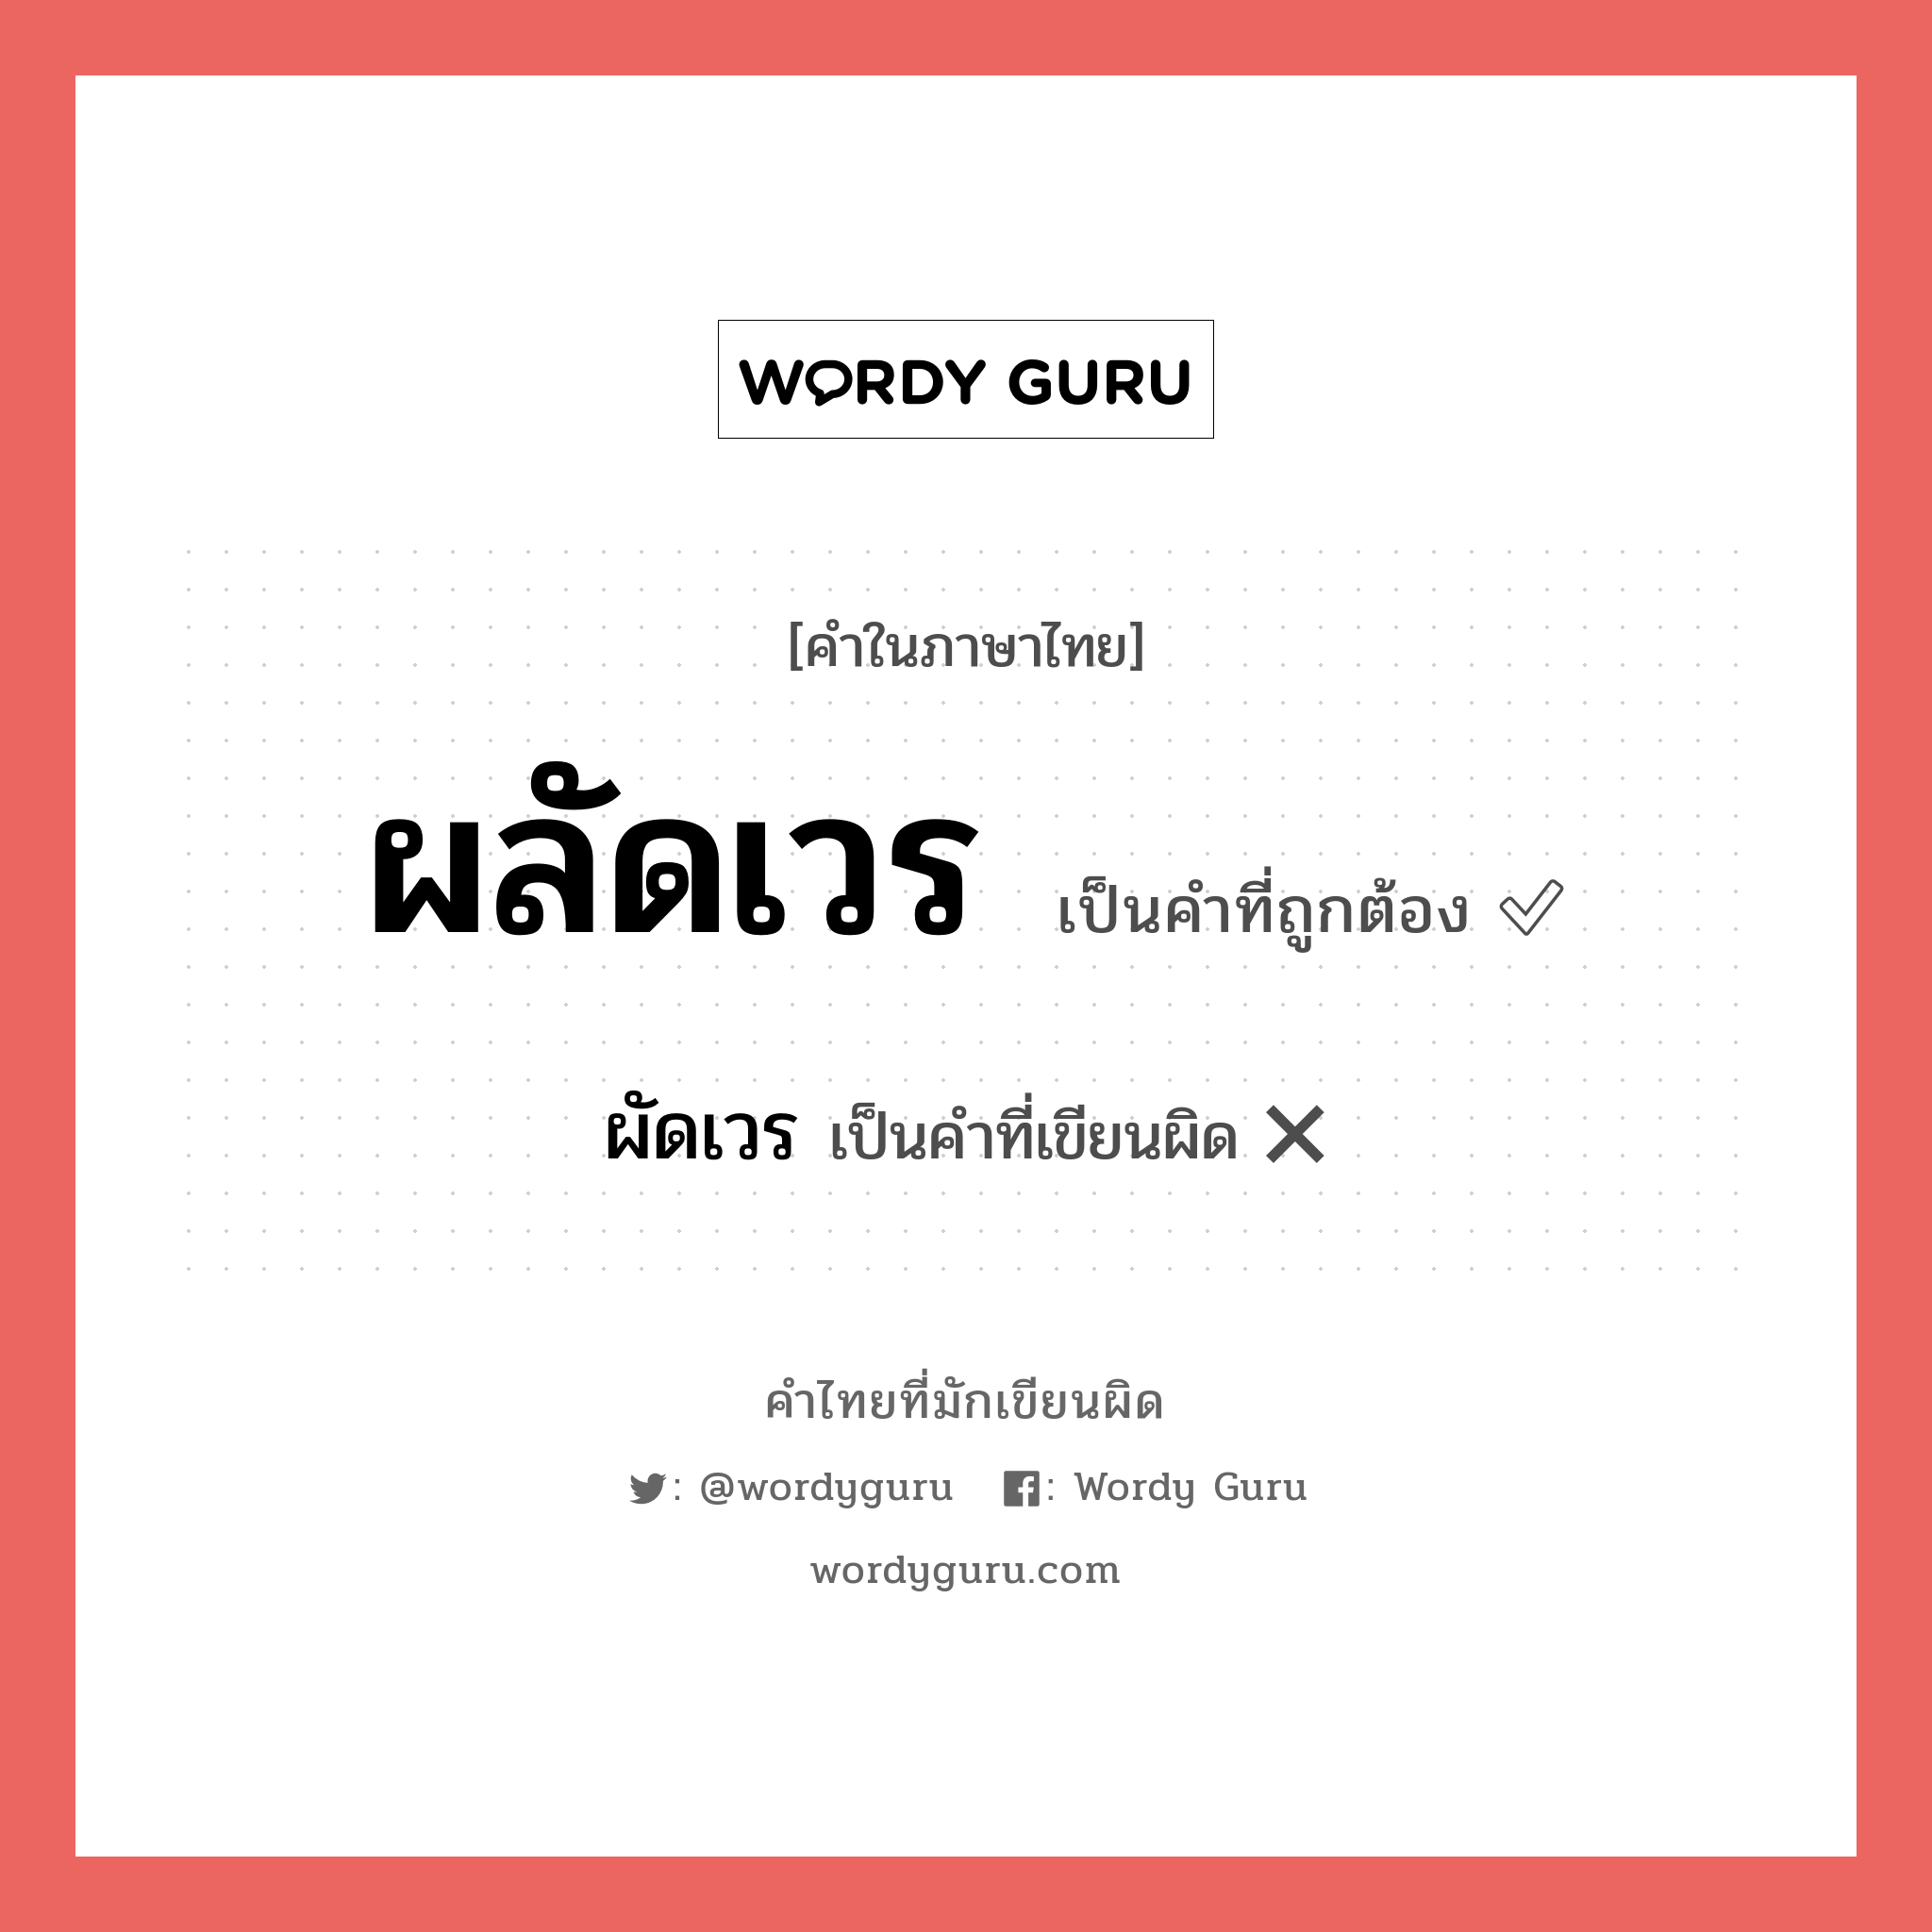 ผลัดเวร หรือ ผัดเวร คำไหนเขียนถูก?, คำในภาษาไทยที่มักเขียนผิด ผลัดเวร คำที่ผิด ❌ ผัดเวร